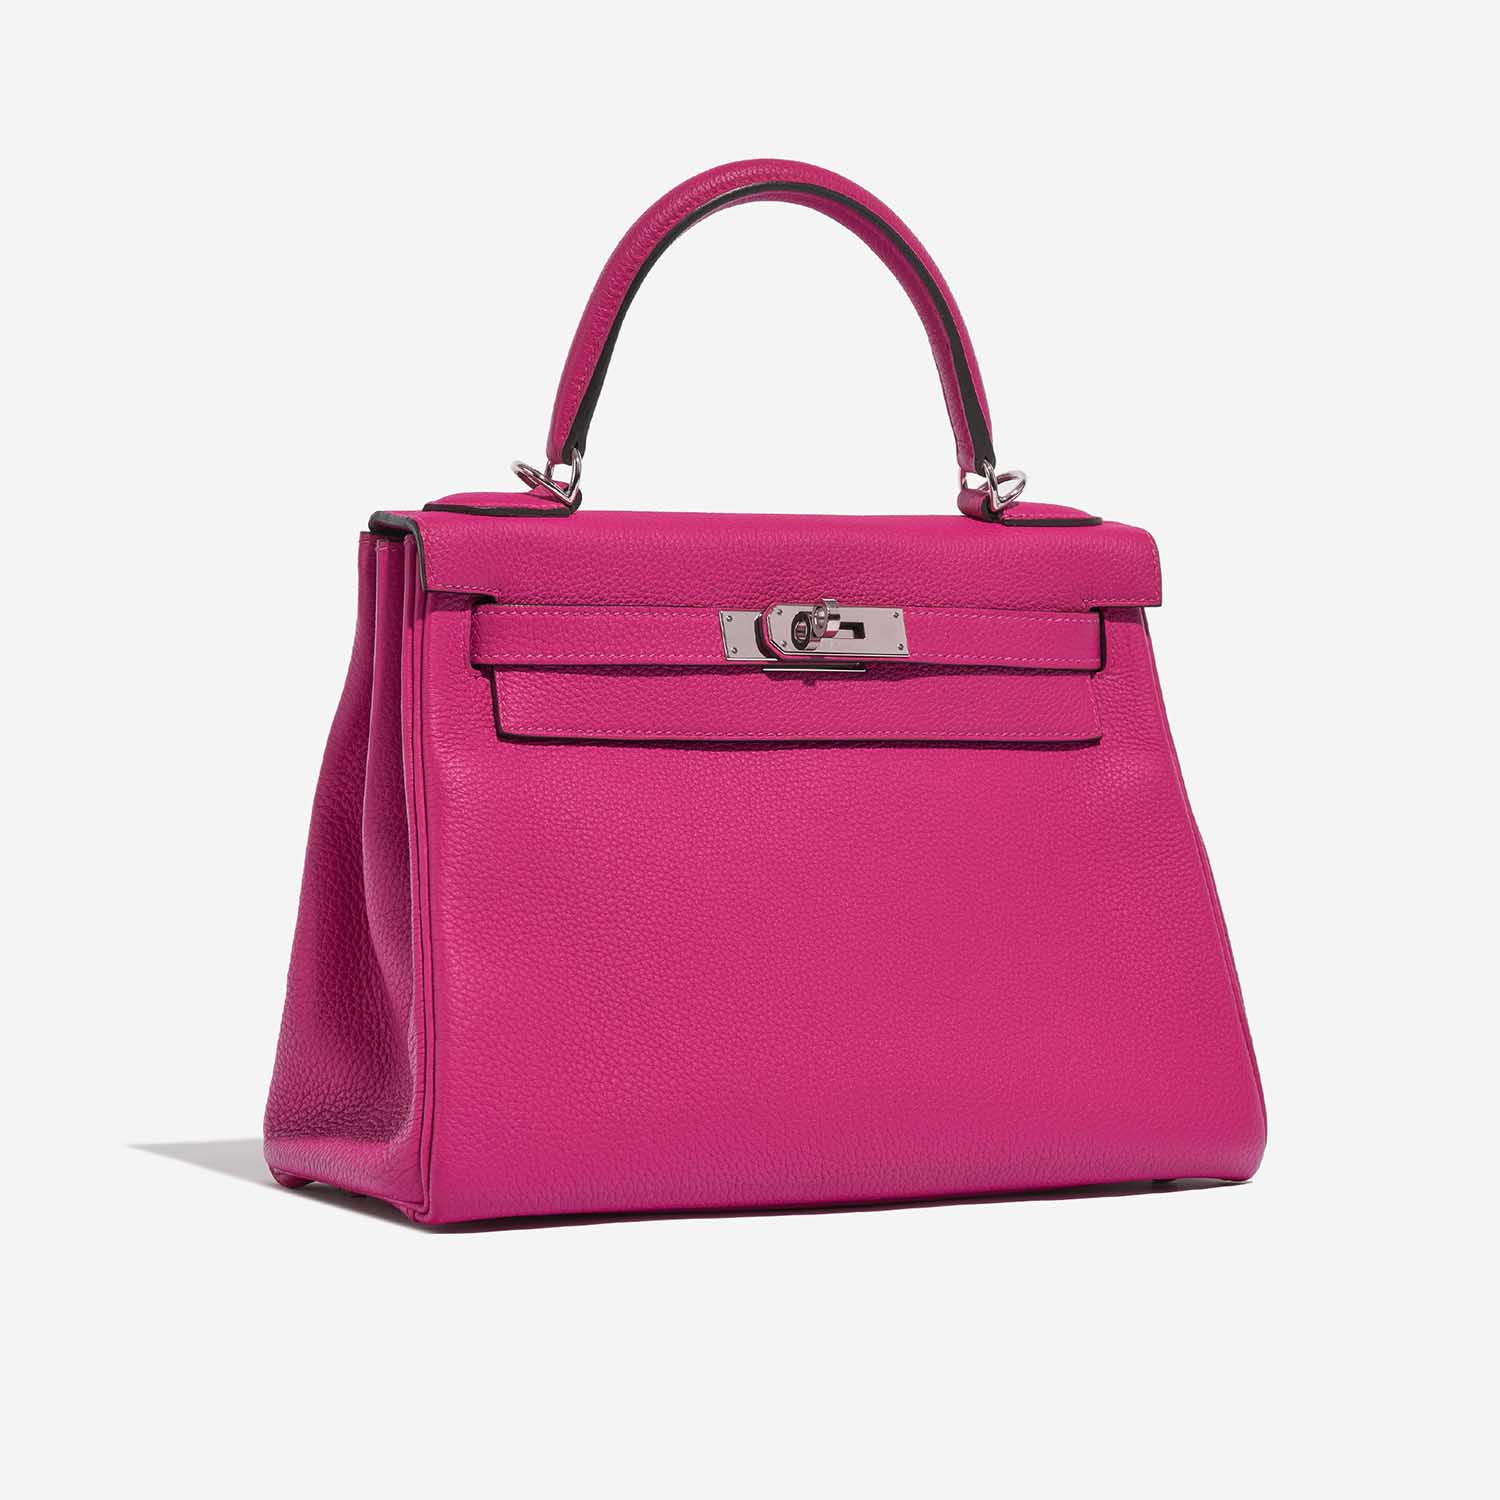 Hermès Kelly 28 RosePourpre 6SF S | Verkaufen Sie Ihre Designertasche auf Saclab.com